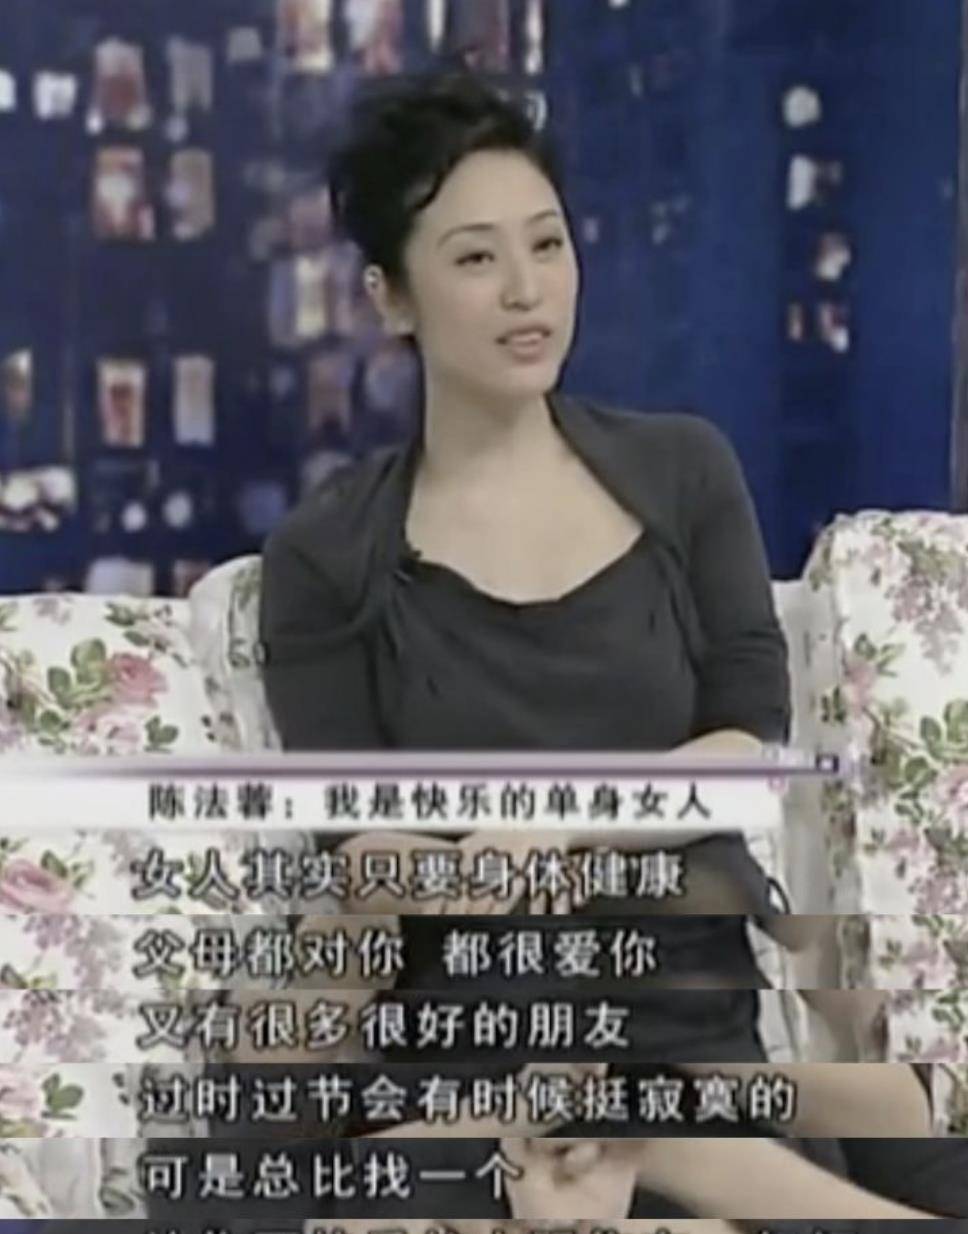 原创第一位高学历港姐谈恋爱被骗为情身亡陈法蓉54岁快乐单身